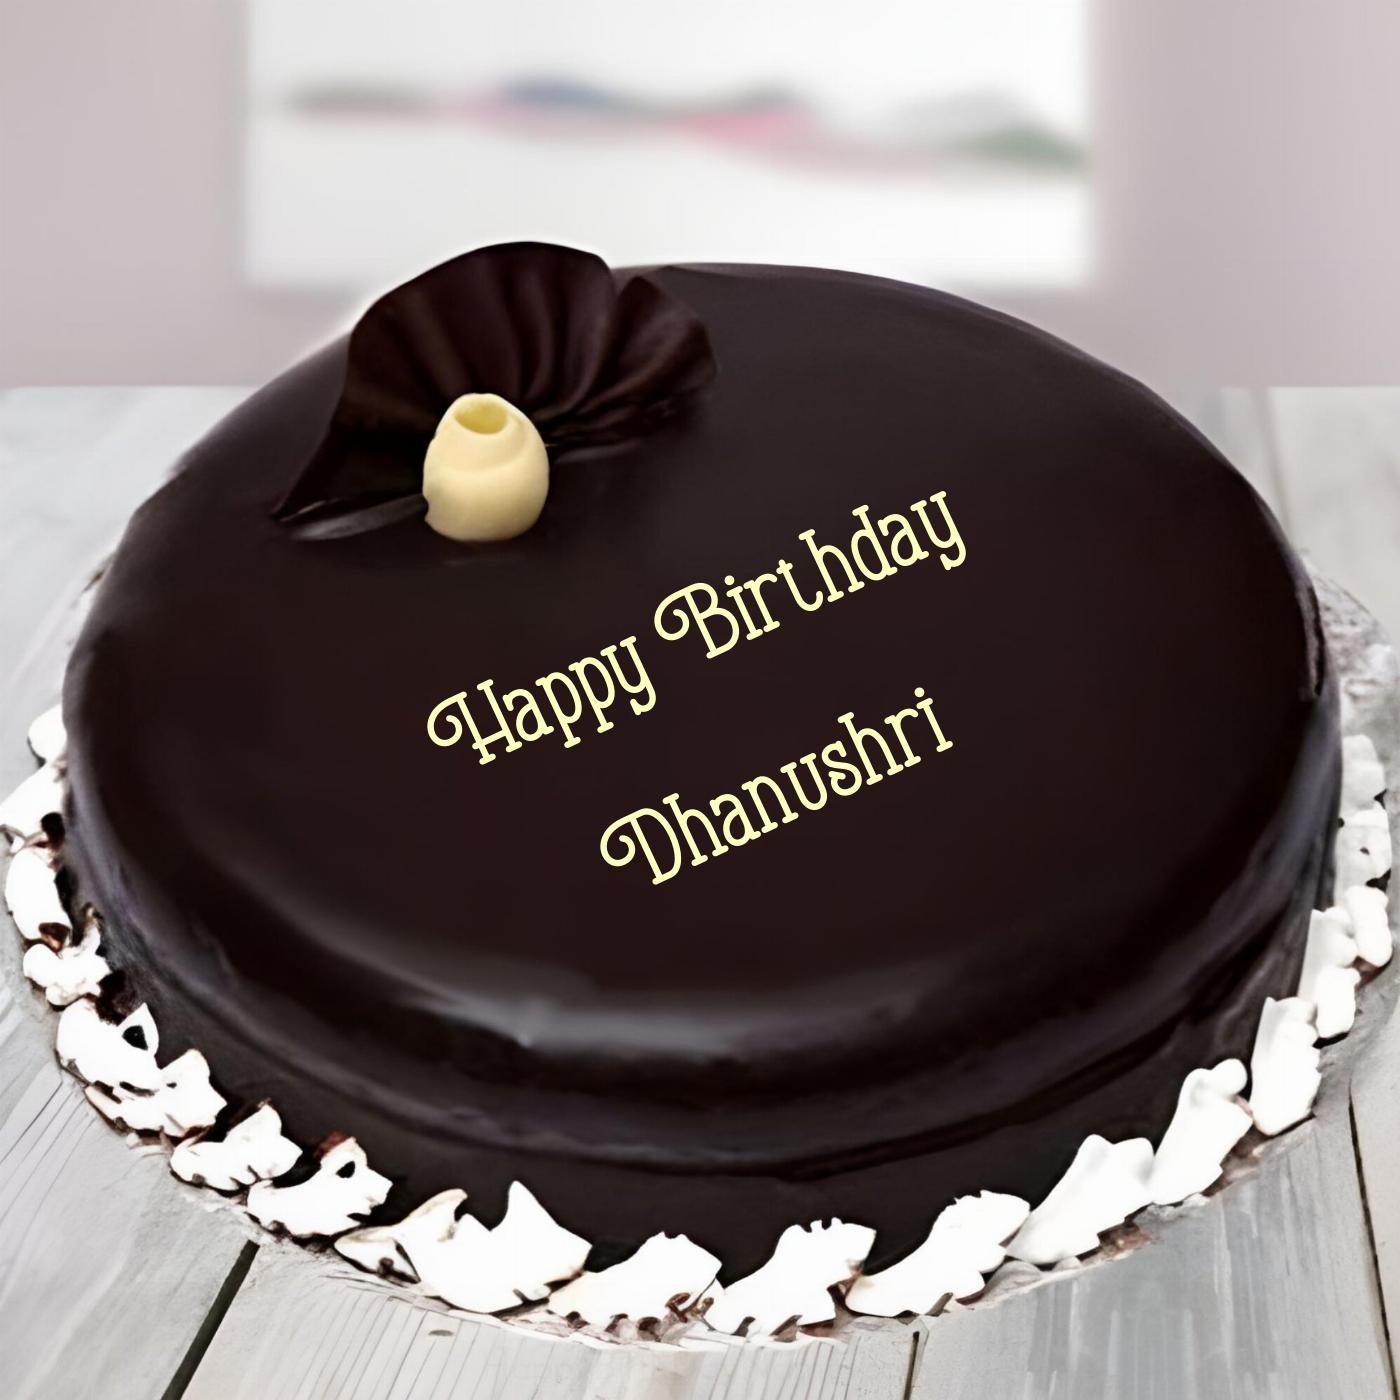 Happy Birthday Dhanushri Beautiful Chocolate Cake